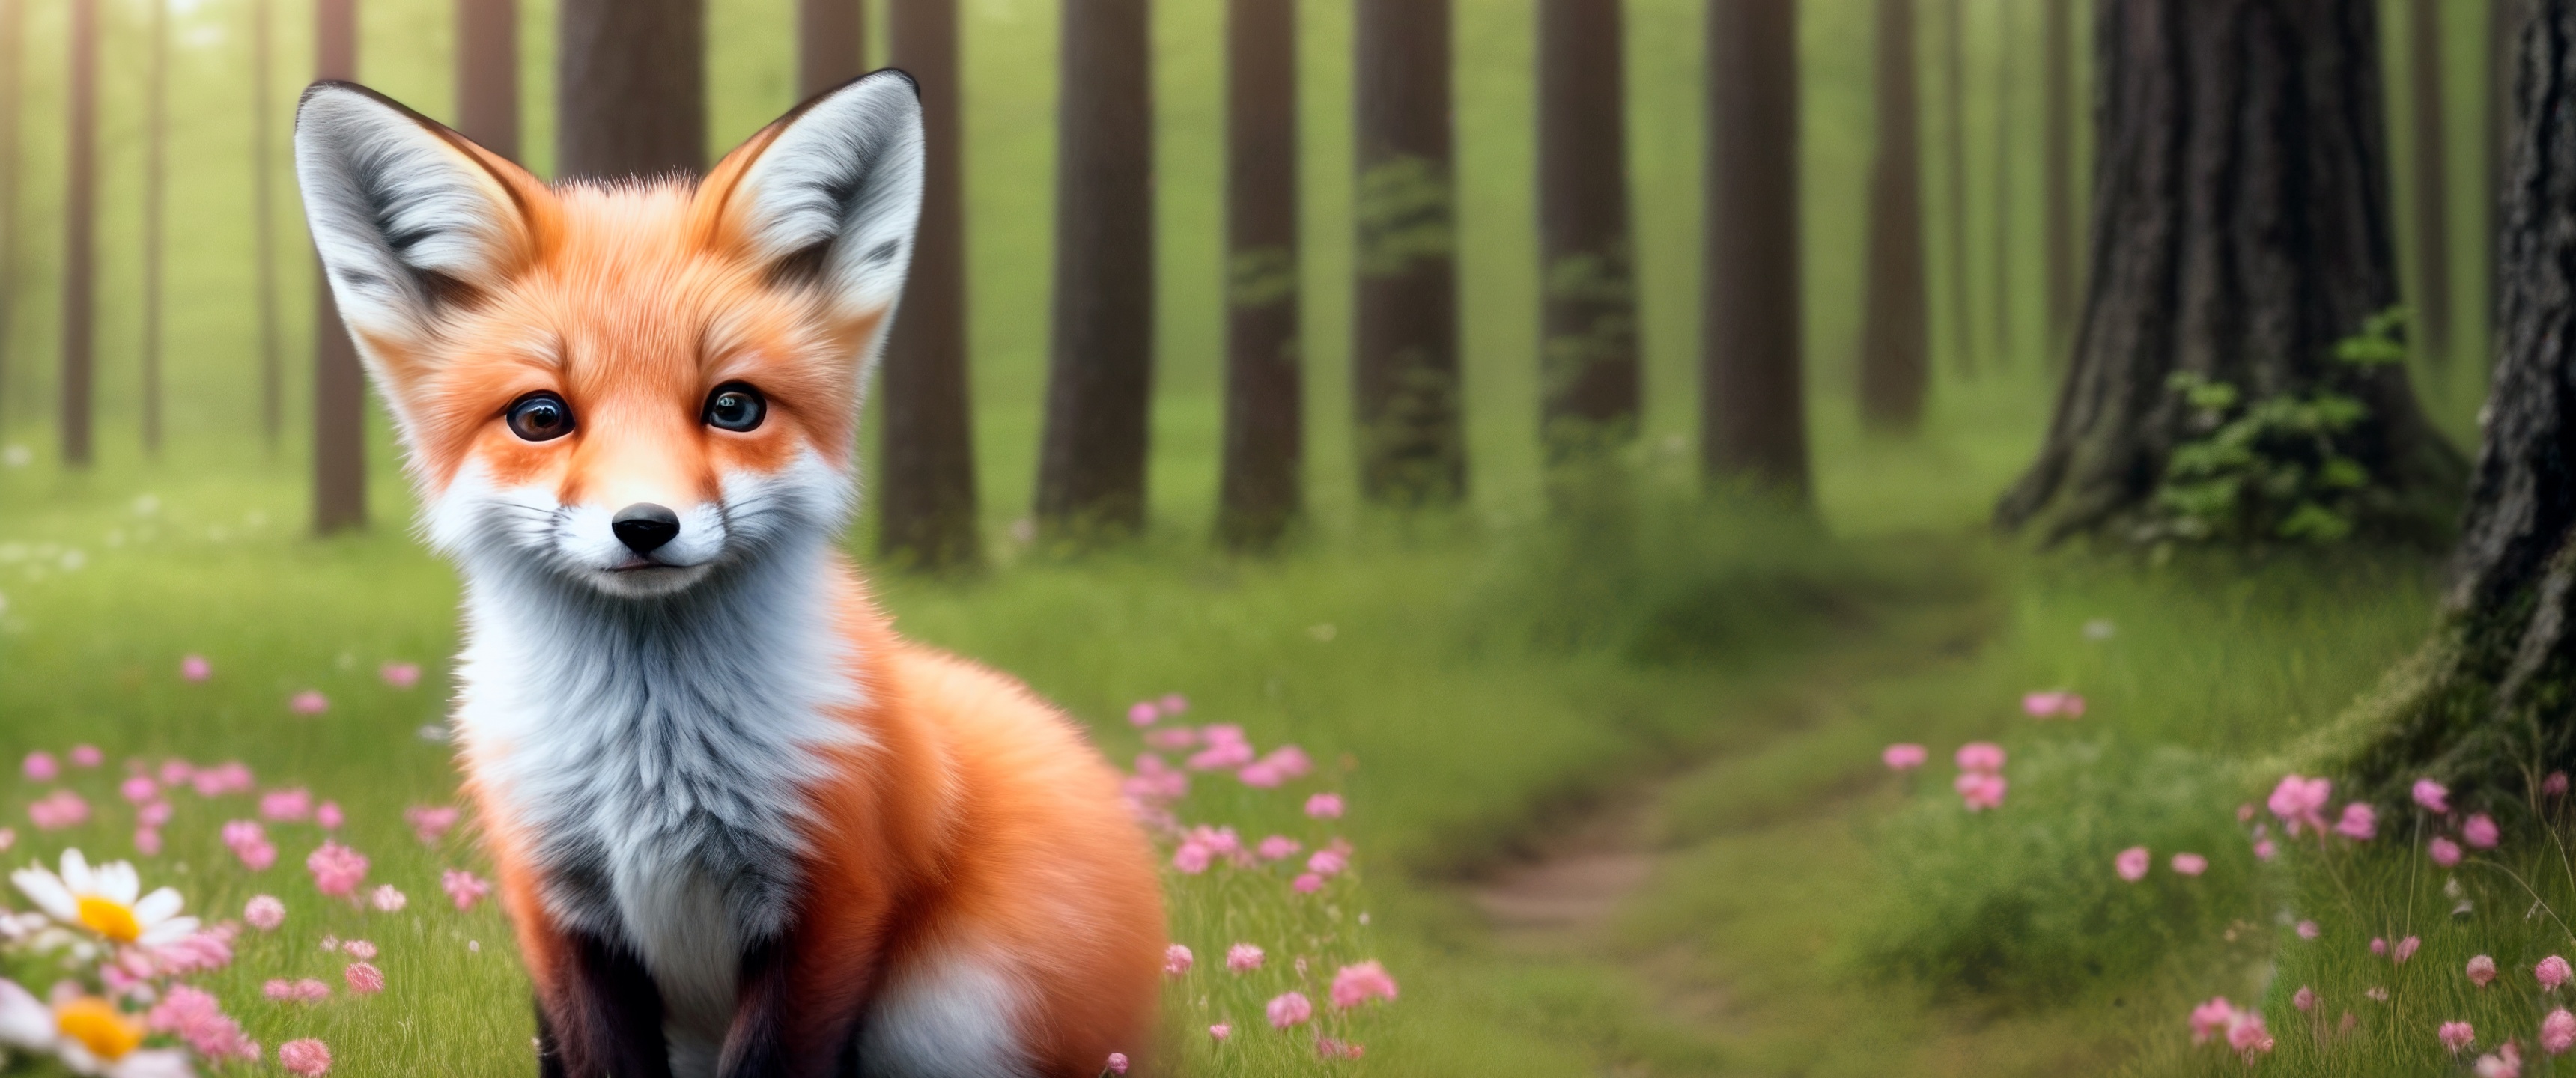 44+] Cute Baby Fox Wallpaper - WallpaperSafari